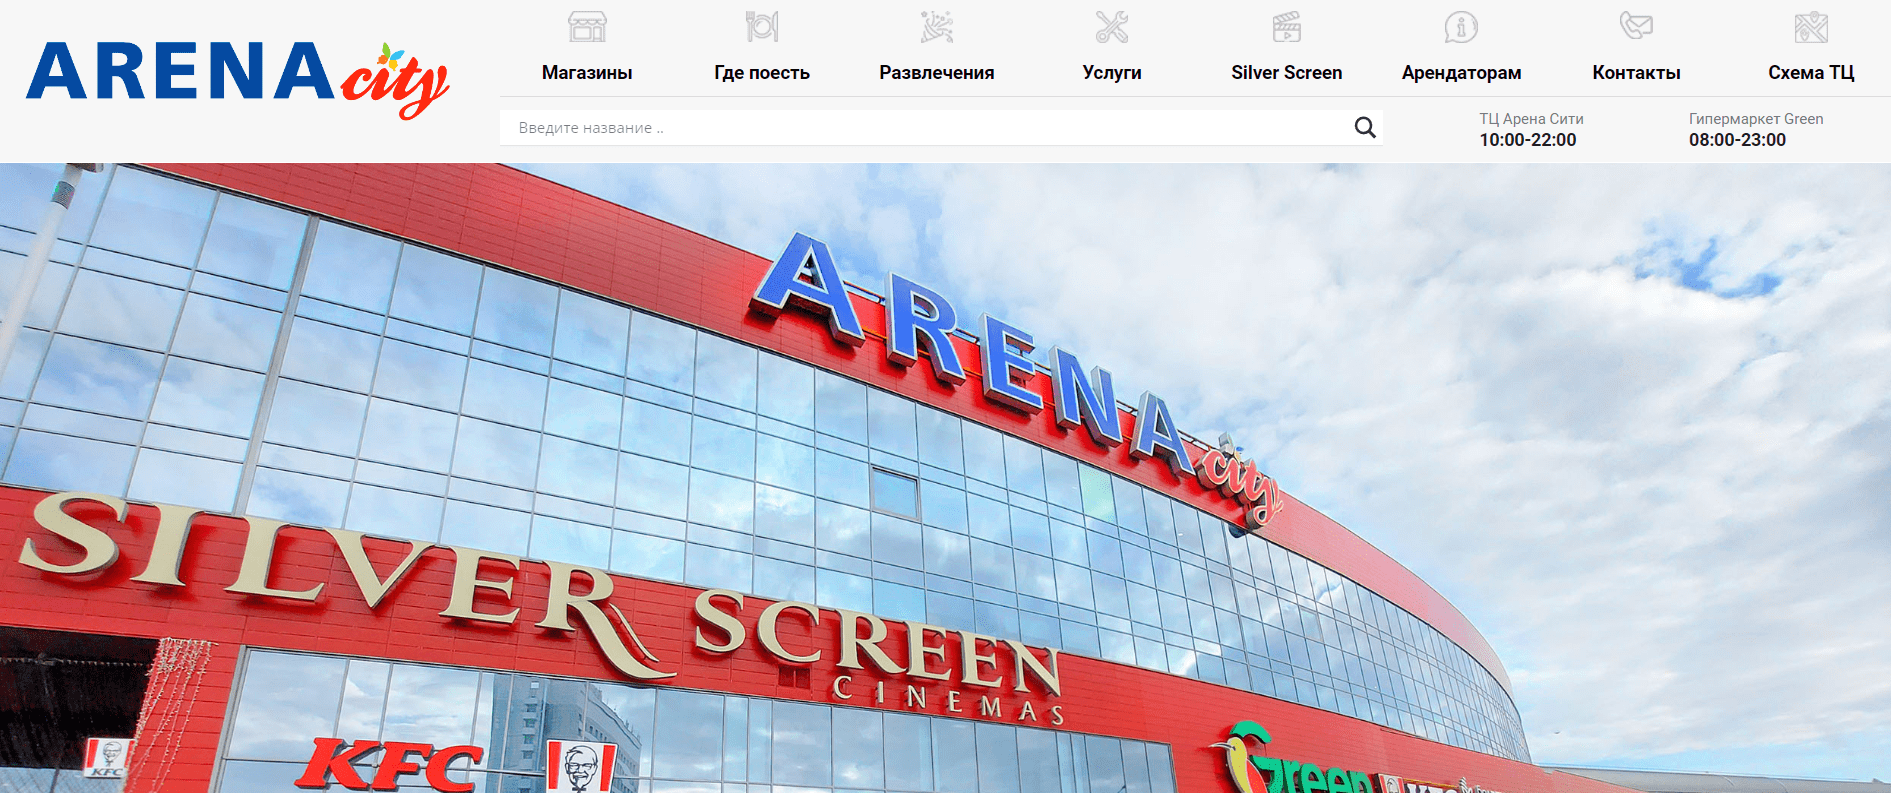 Торговый центр "Arena City" - официальный сайт